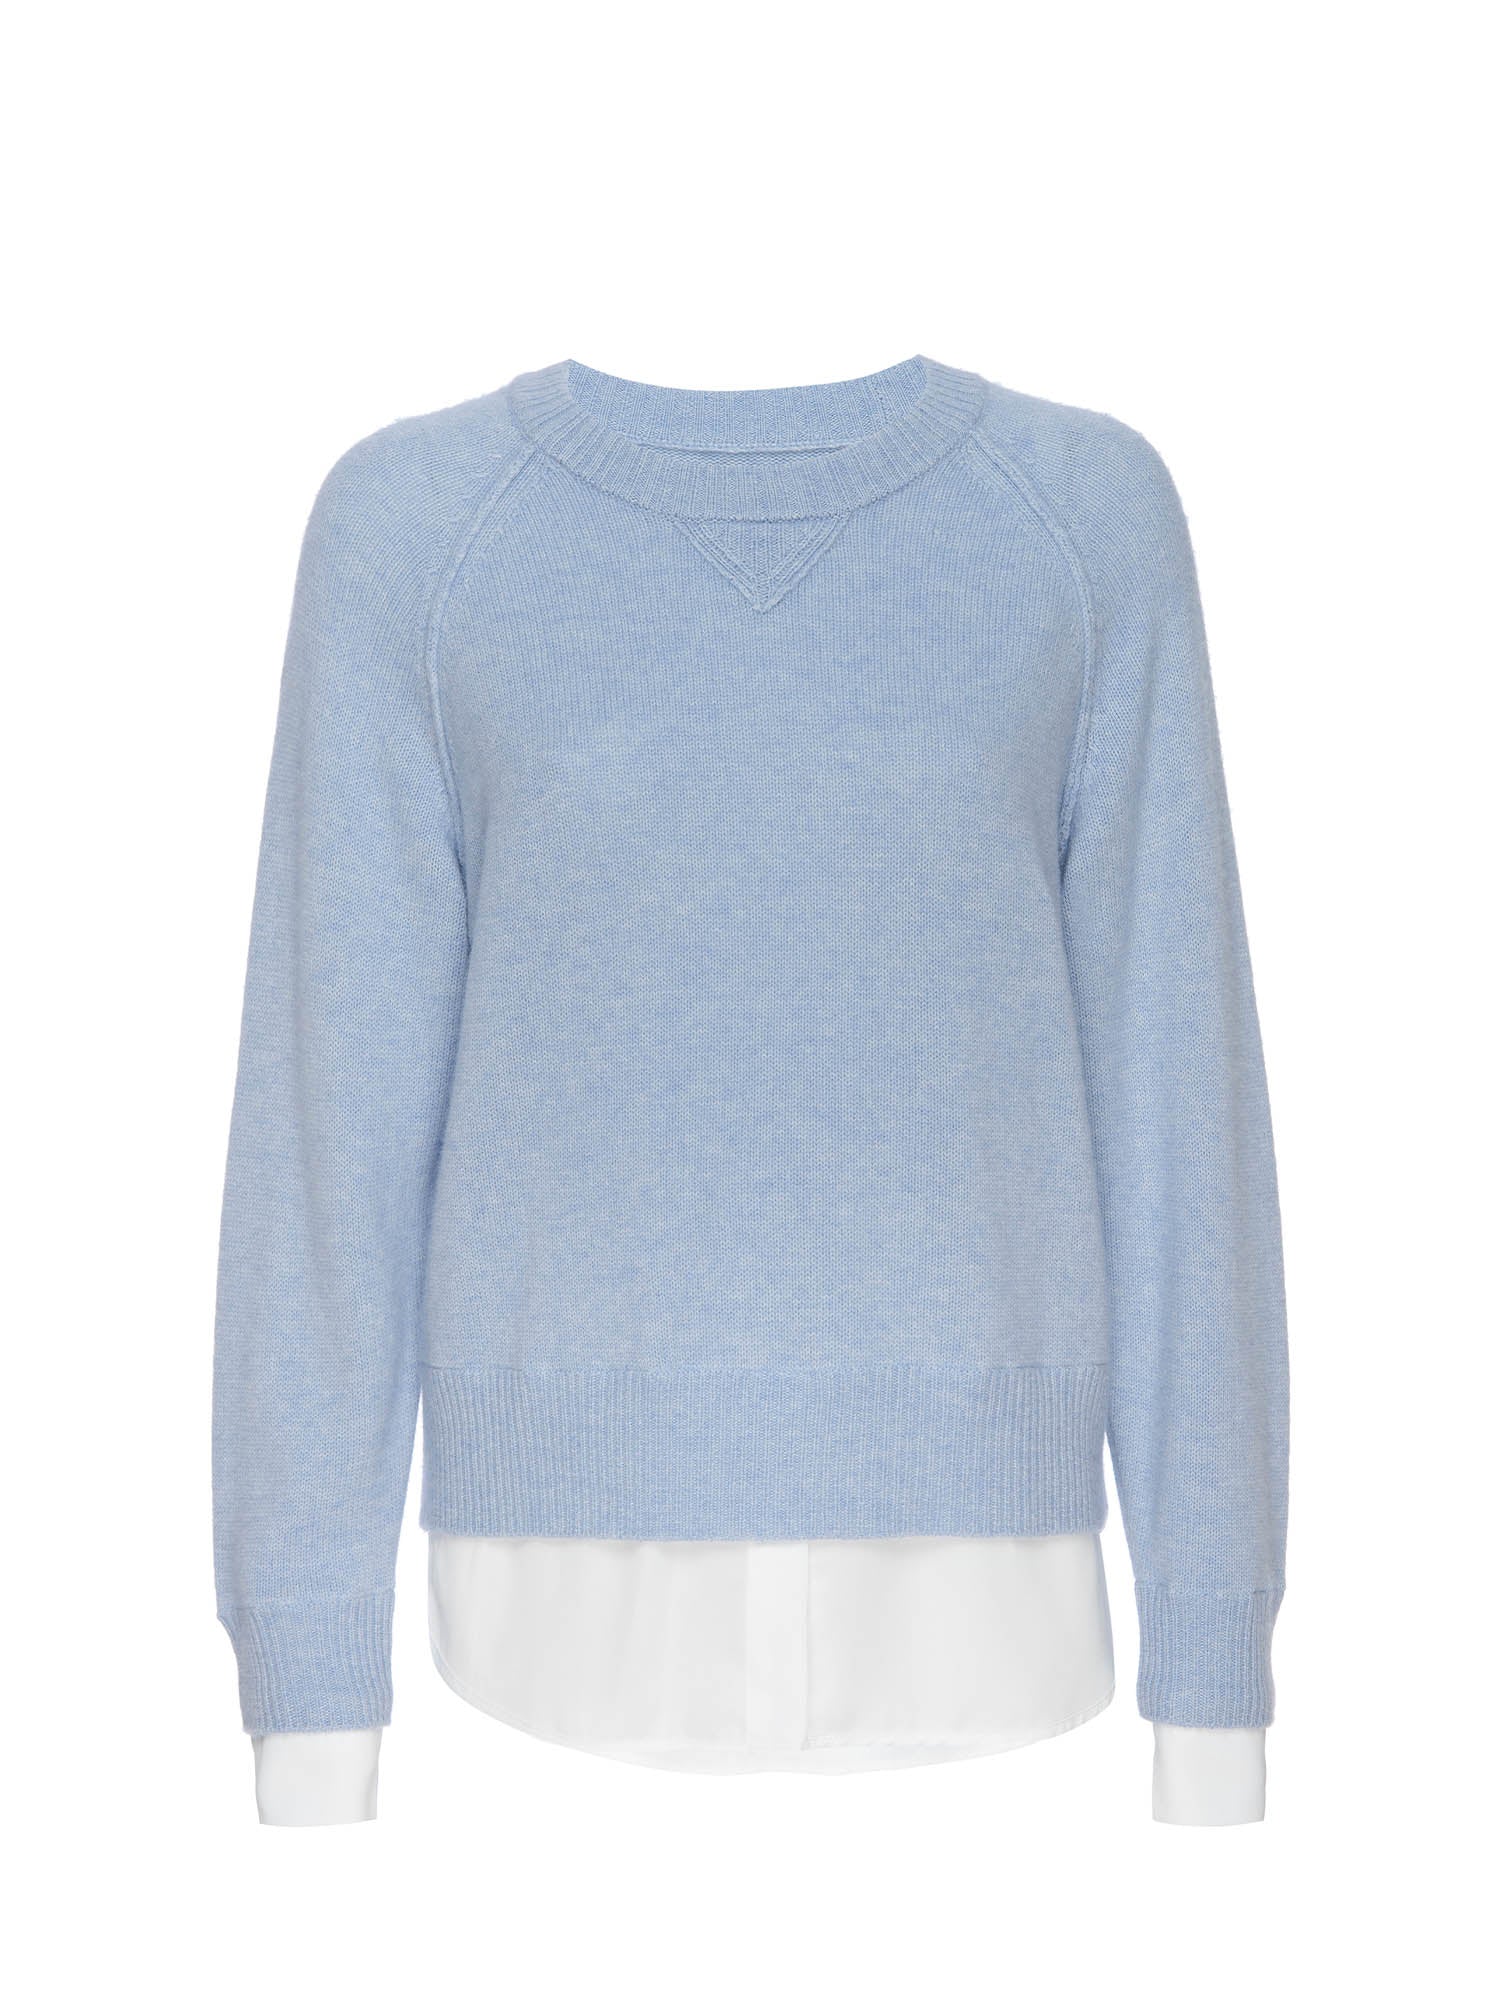 Women's Knit Sweatshirt Looker in Skye Blue Mélange with White